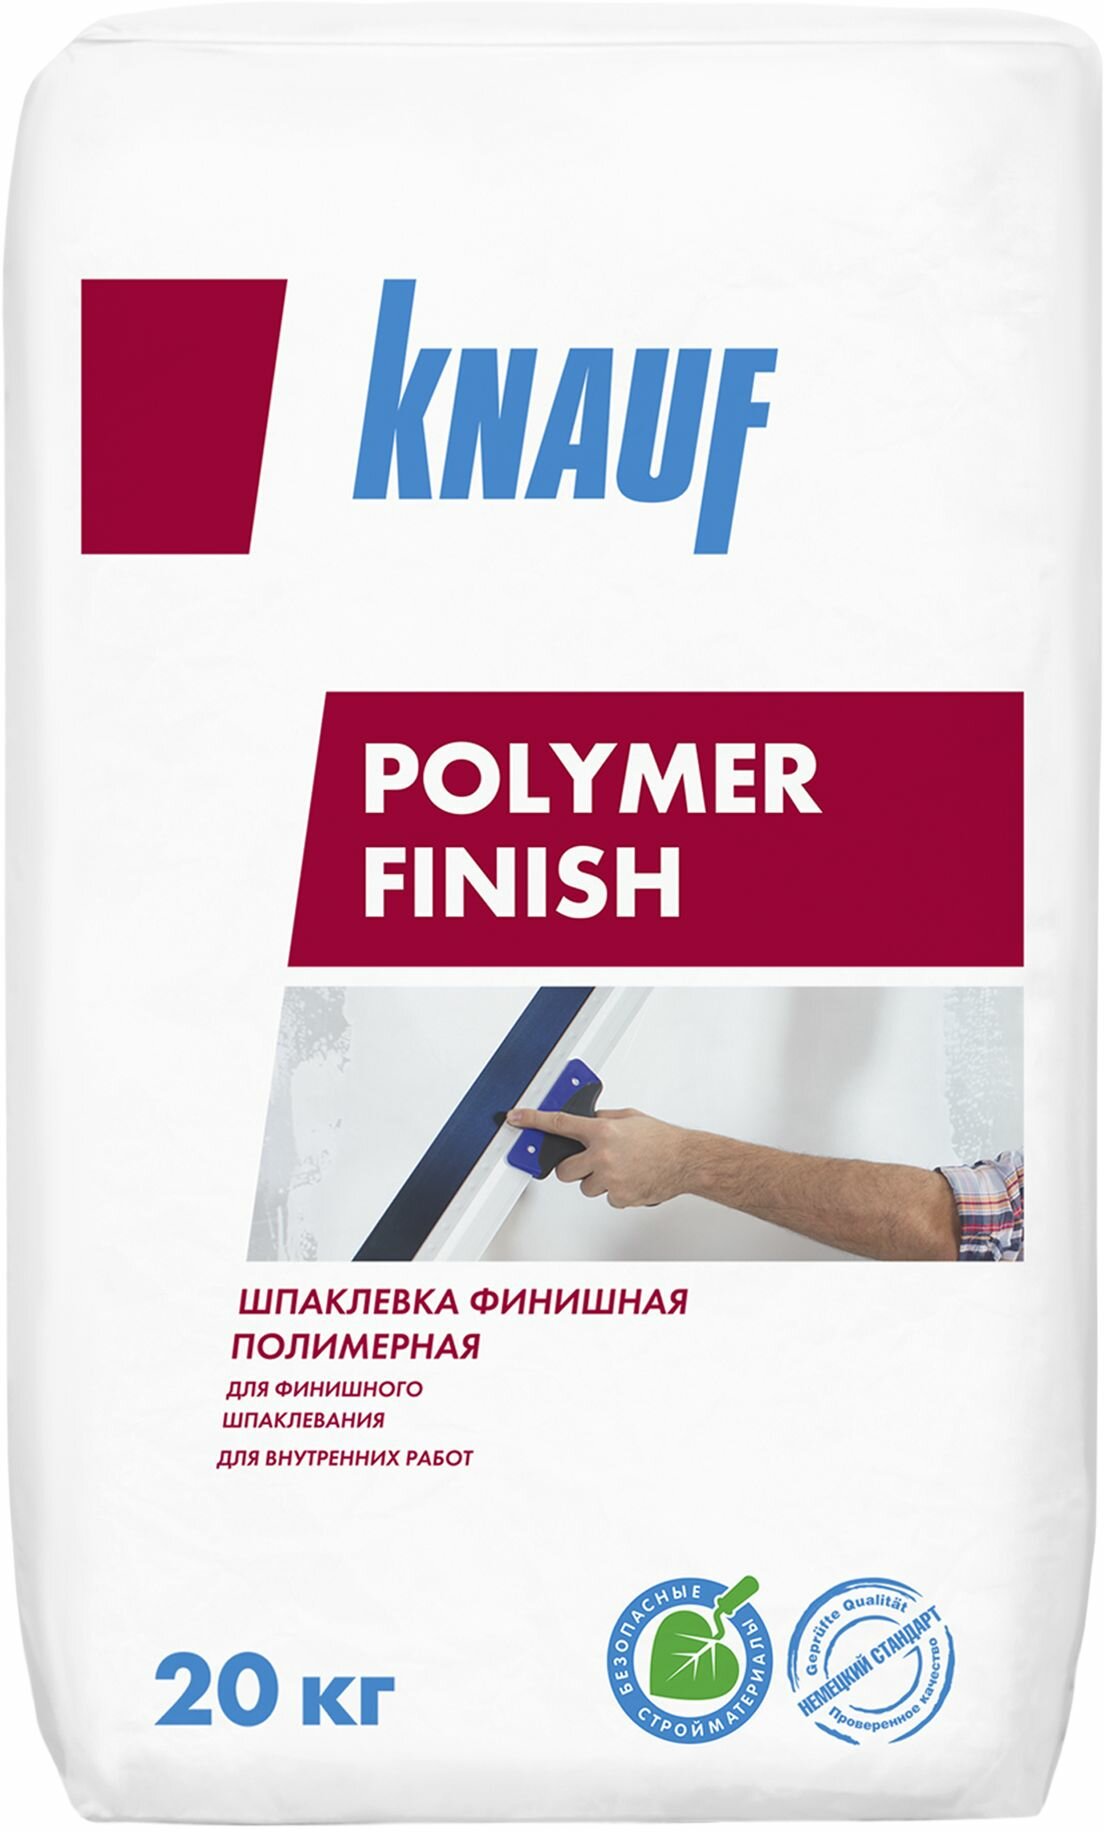 Шпаклевка финишная полимерная KNAUF Полимер финиш 20 кг